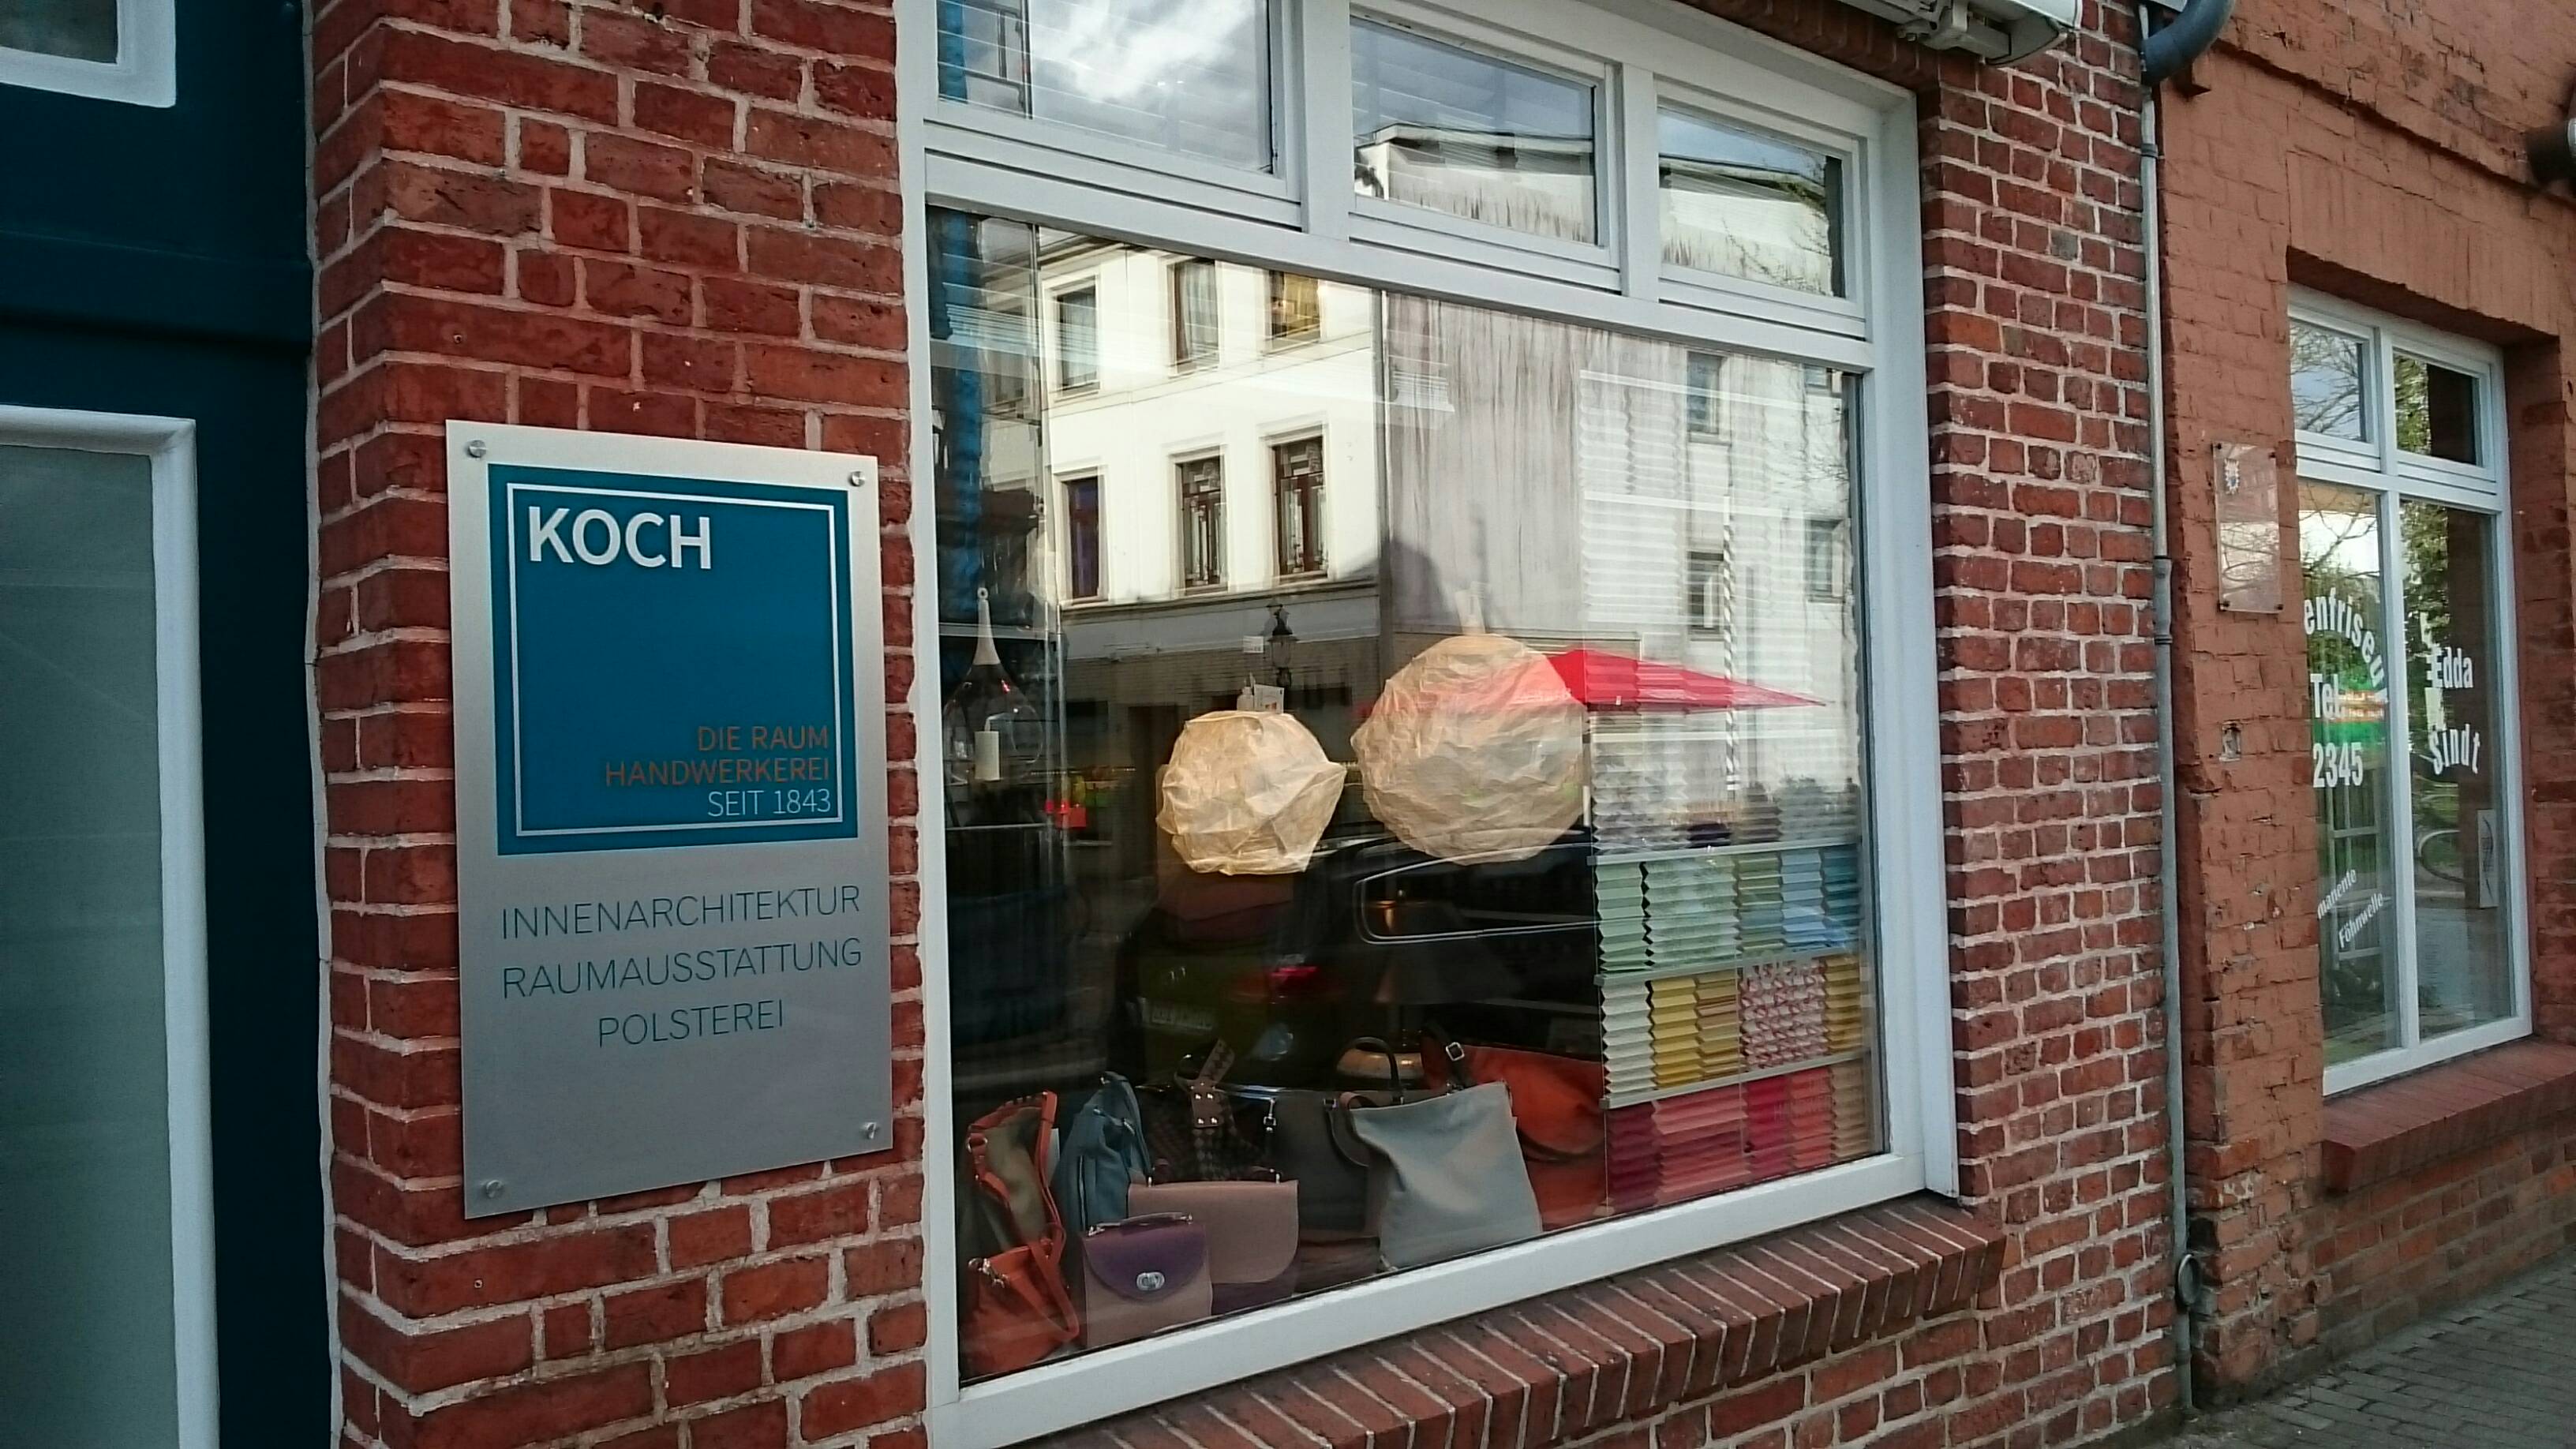 Bild 1 Möbel Koch - die raum handwerkerei in Bad Oldesloe